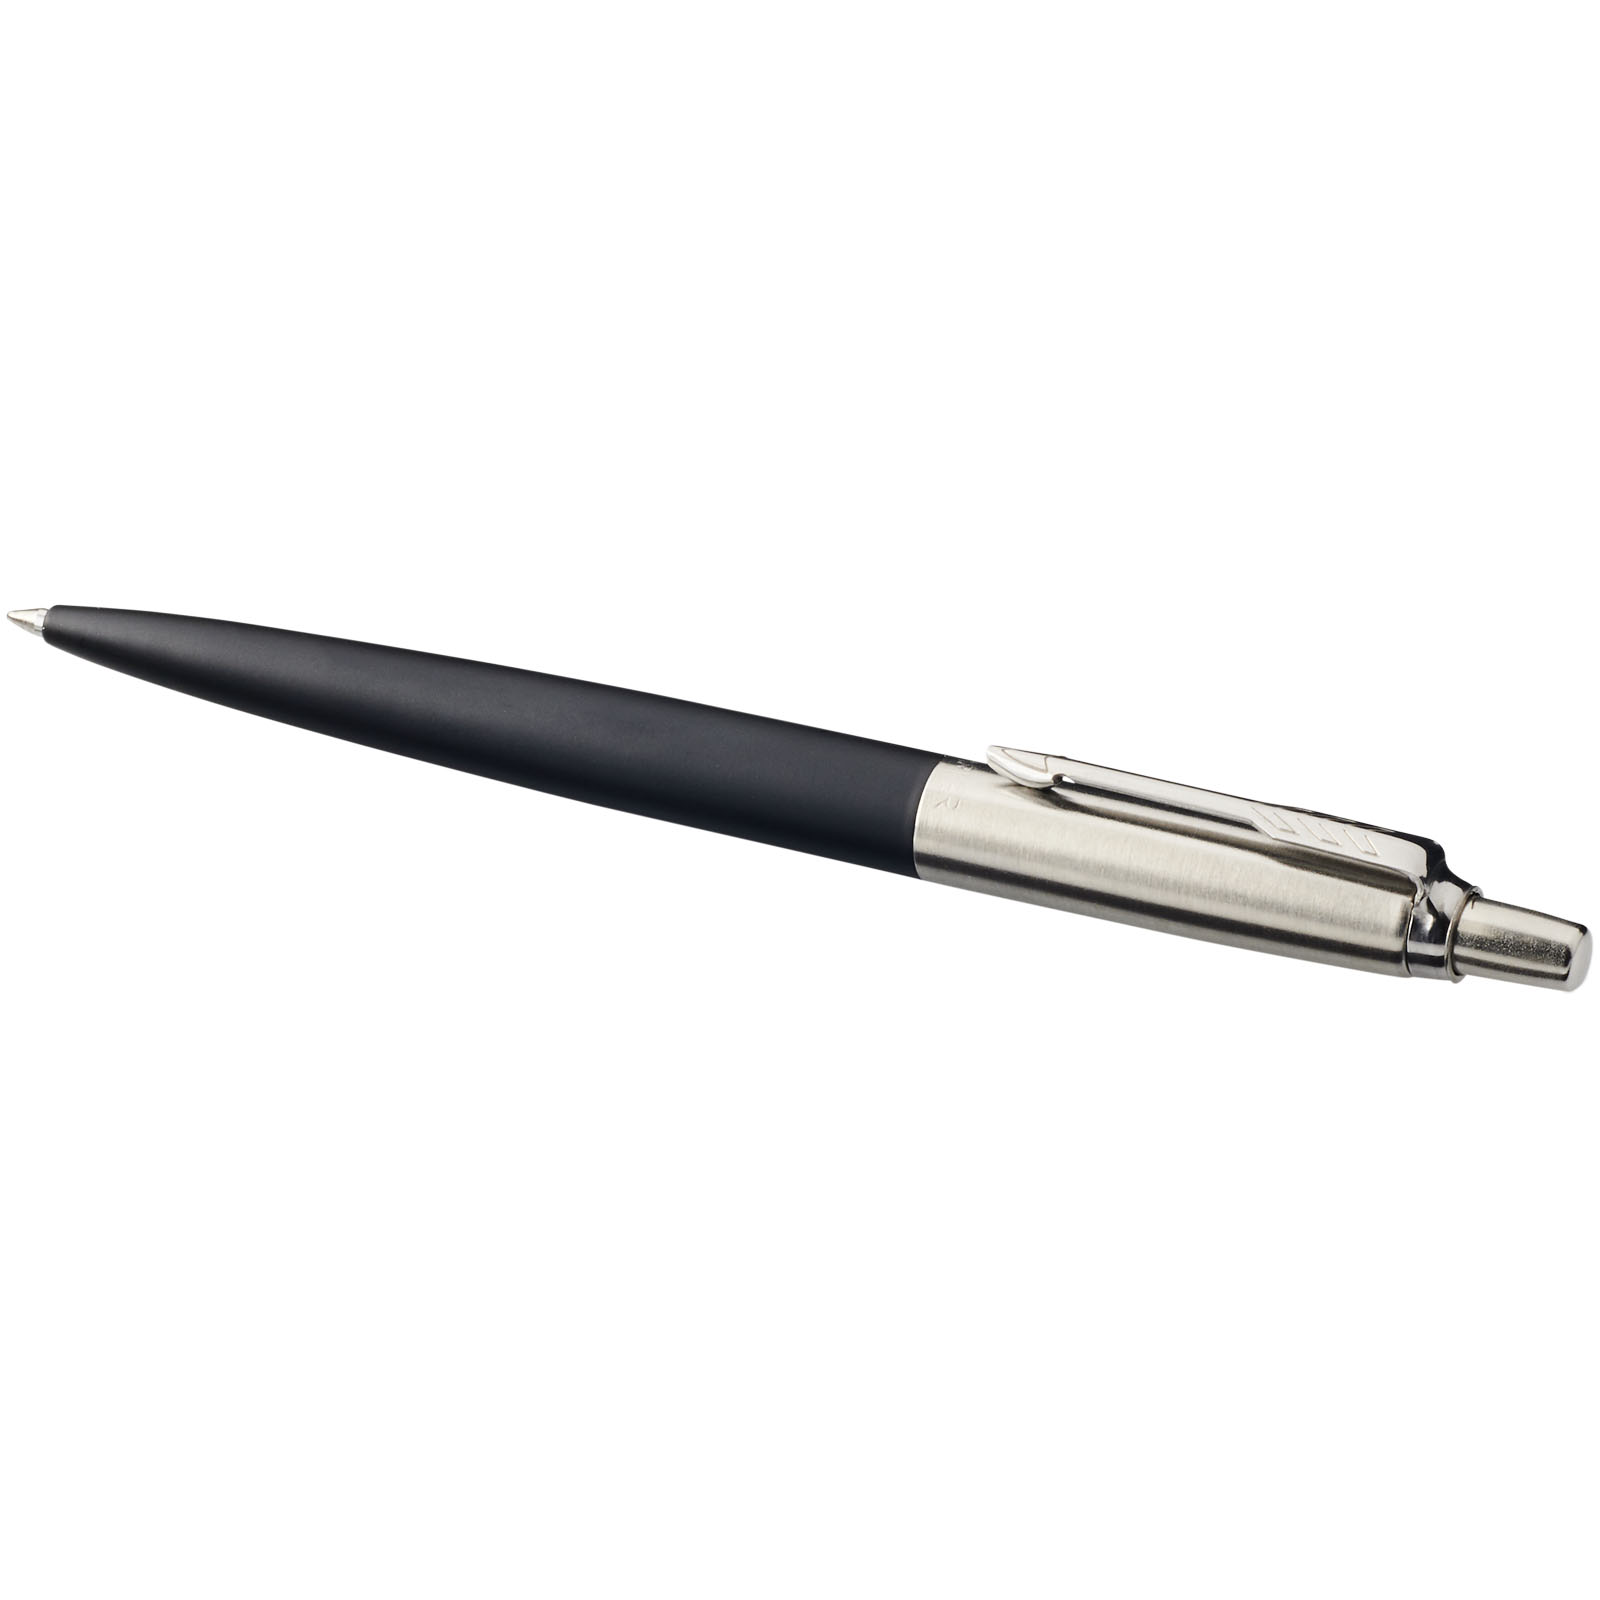 Advertising Ballpoint Pens - Parker Jotter Bond Street ballpoint pen - 4